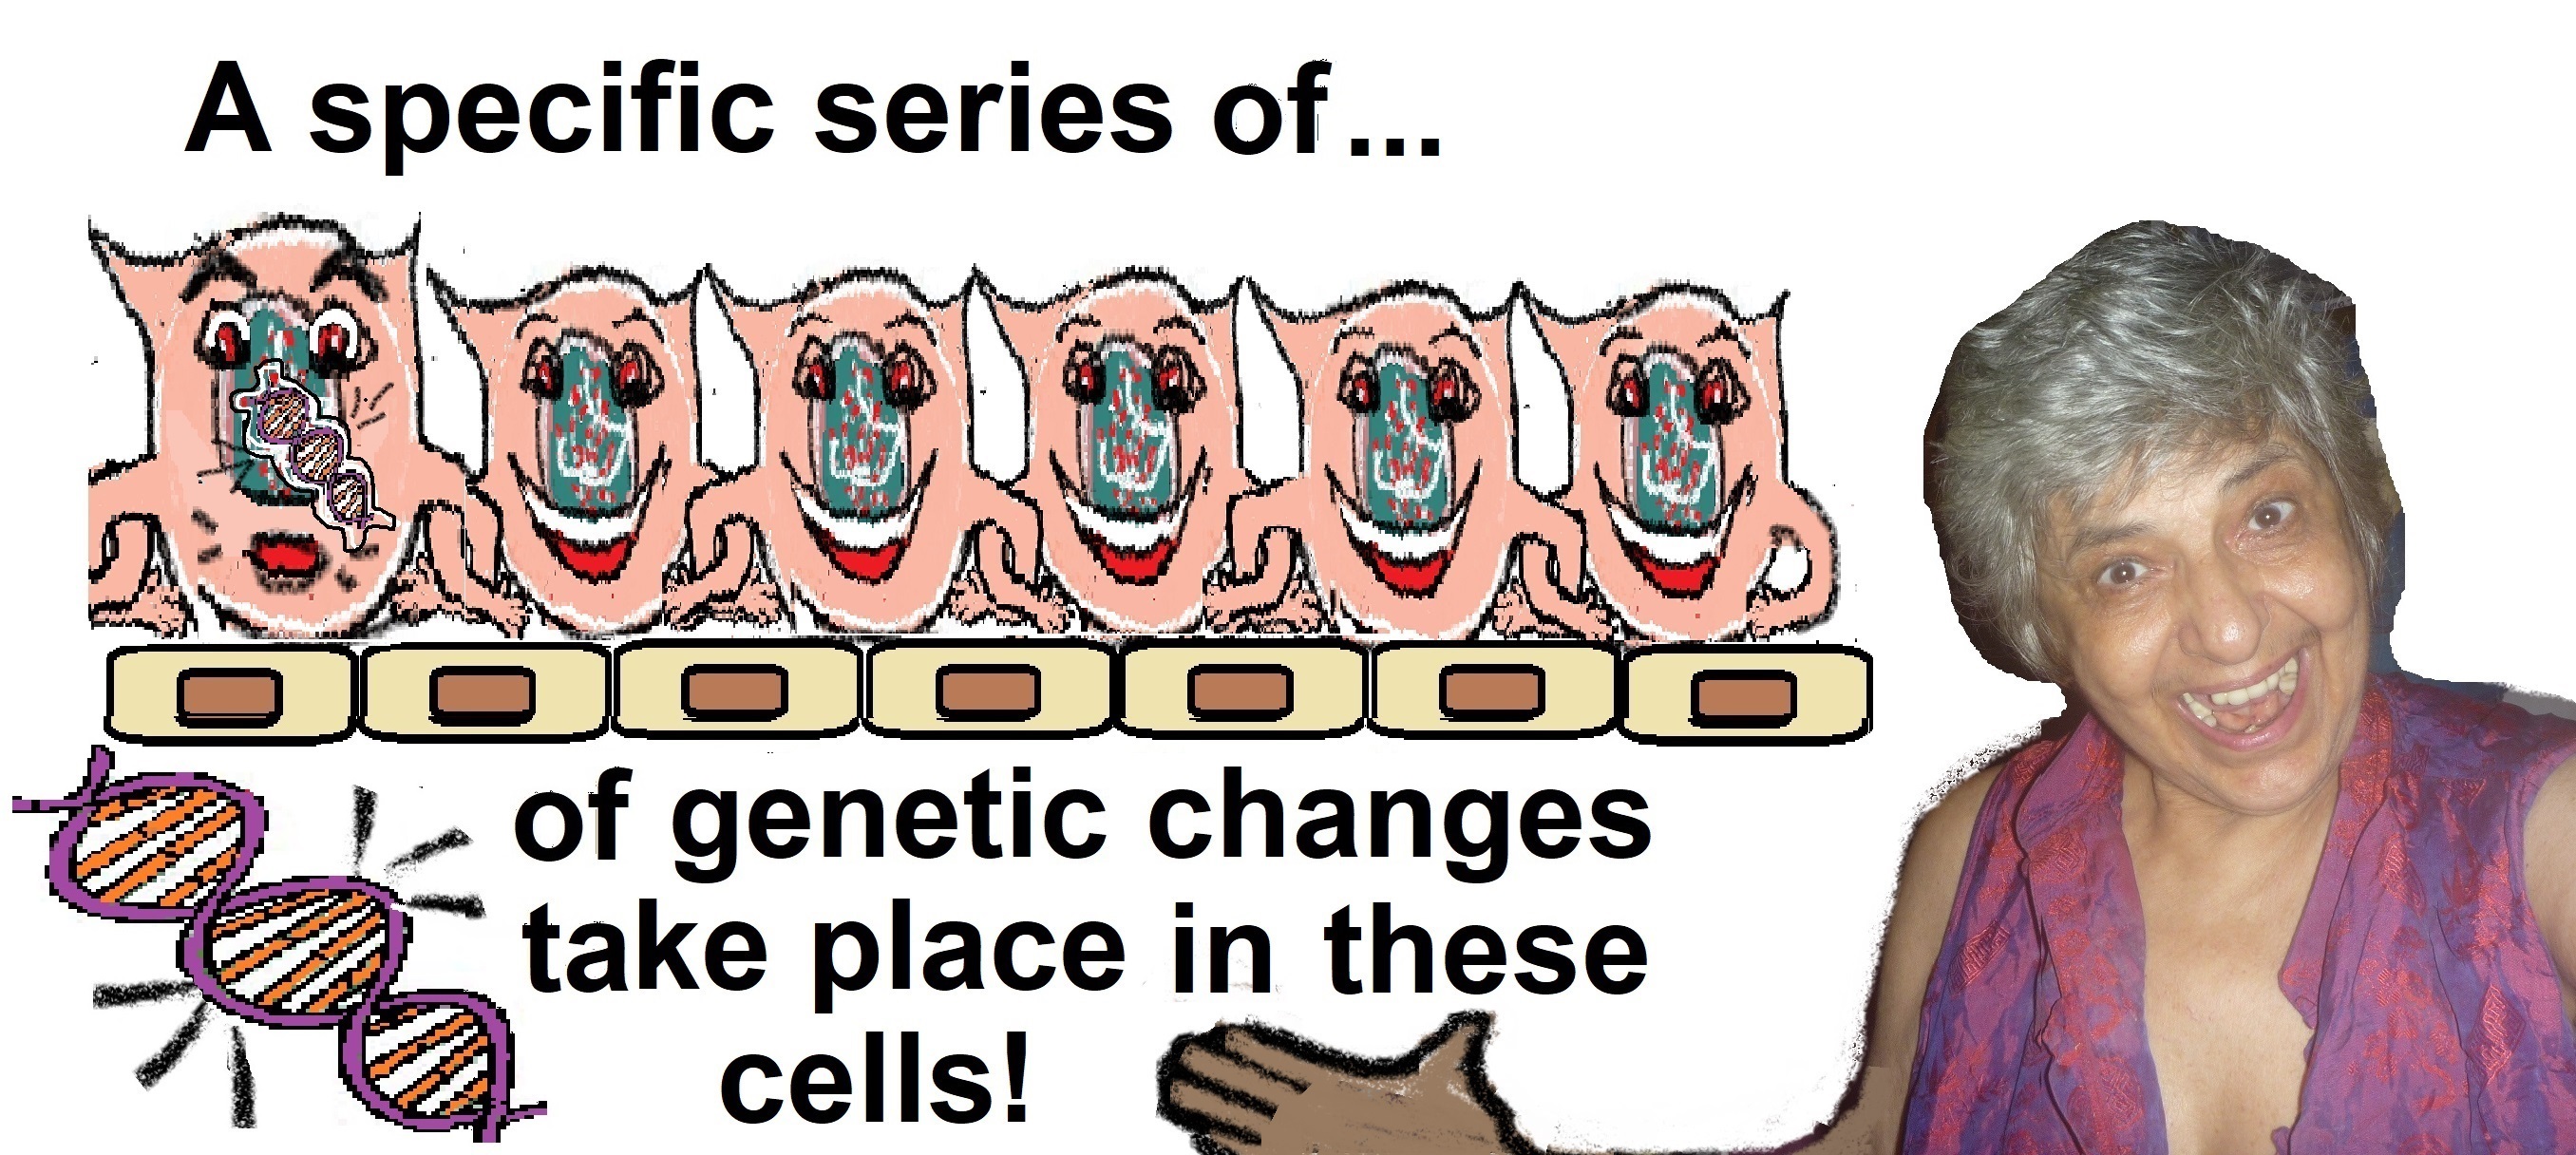 me yeah epigenetic changes1a